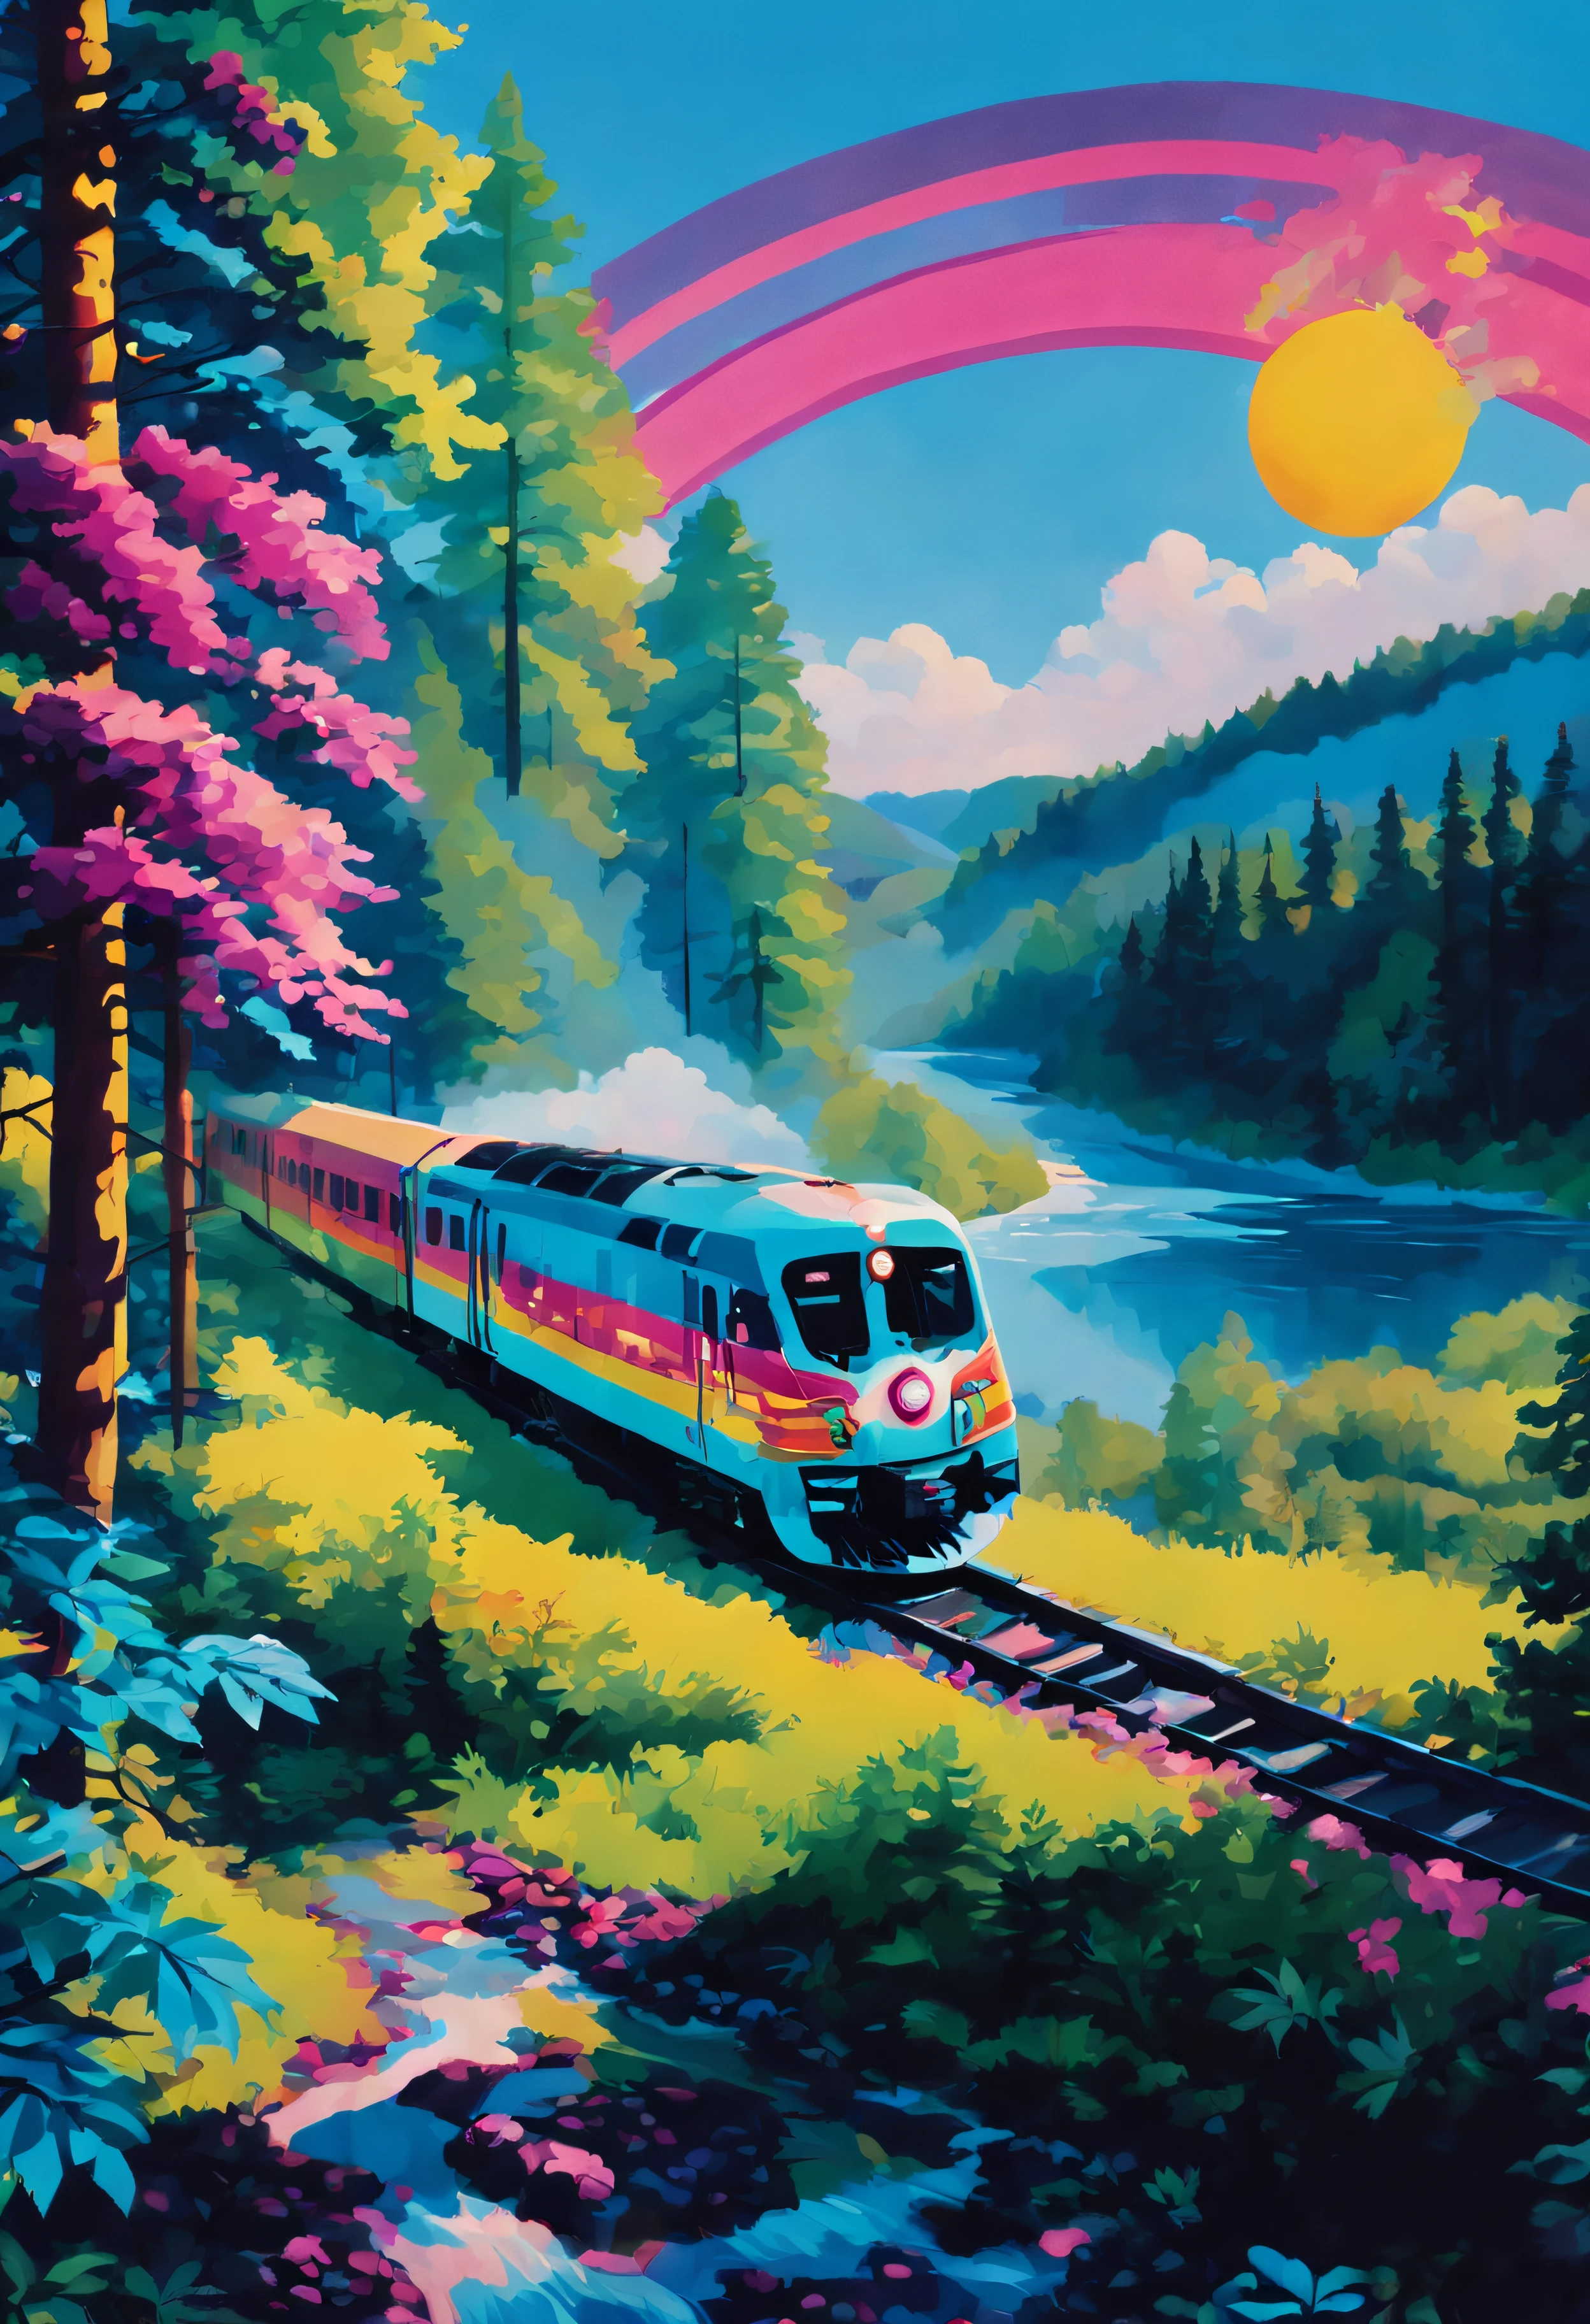 ネオンスタイル, 列車が森の中を走っている. 列車は木々に囲まれている. 空は青く、太陽は輝いています. 背景には川があります.